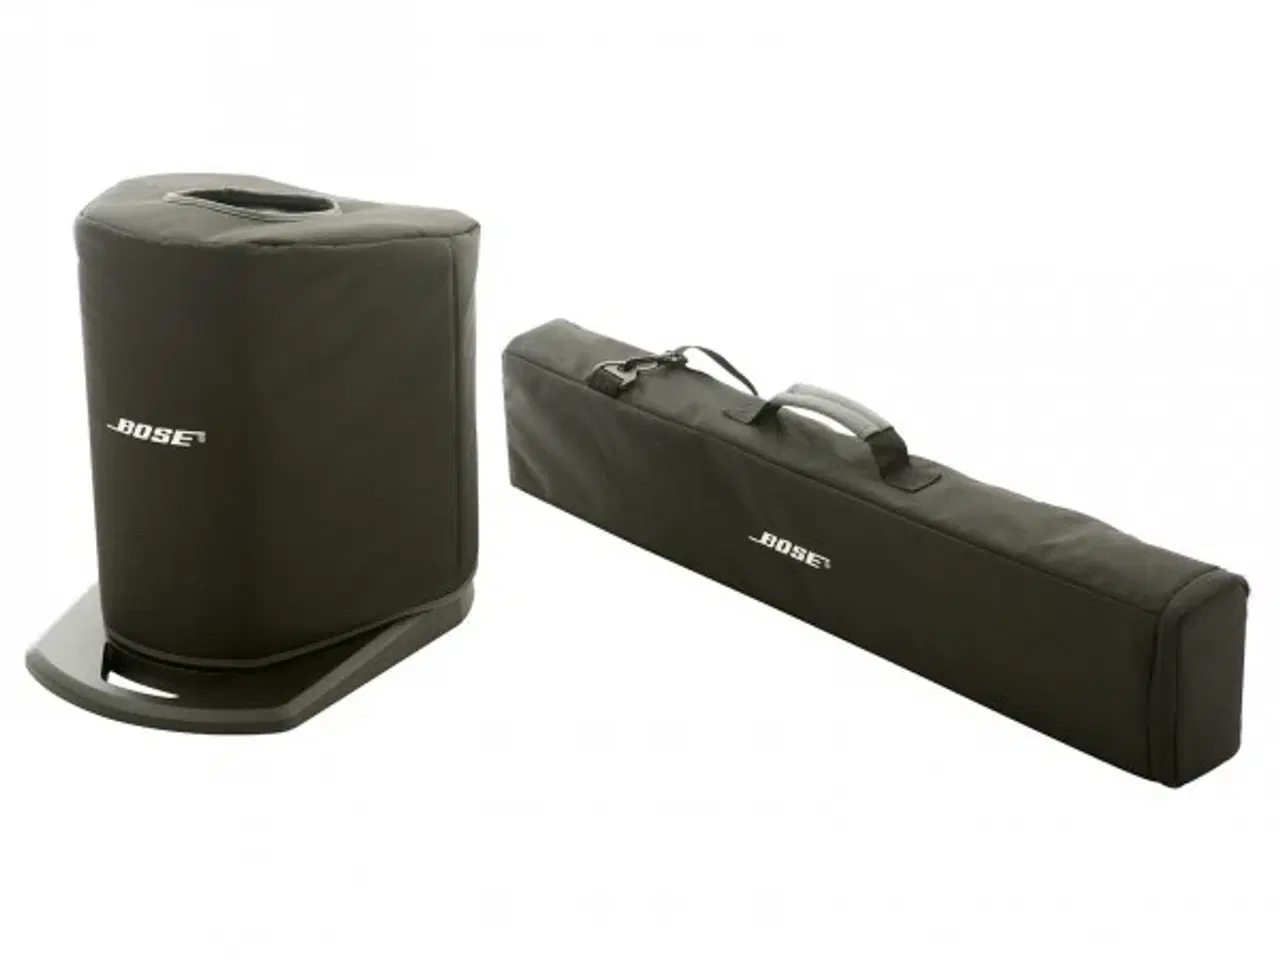 Billede 2 - Bose højtaler transportabel